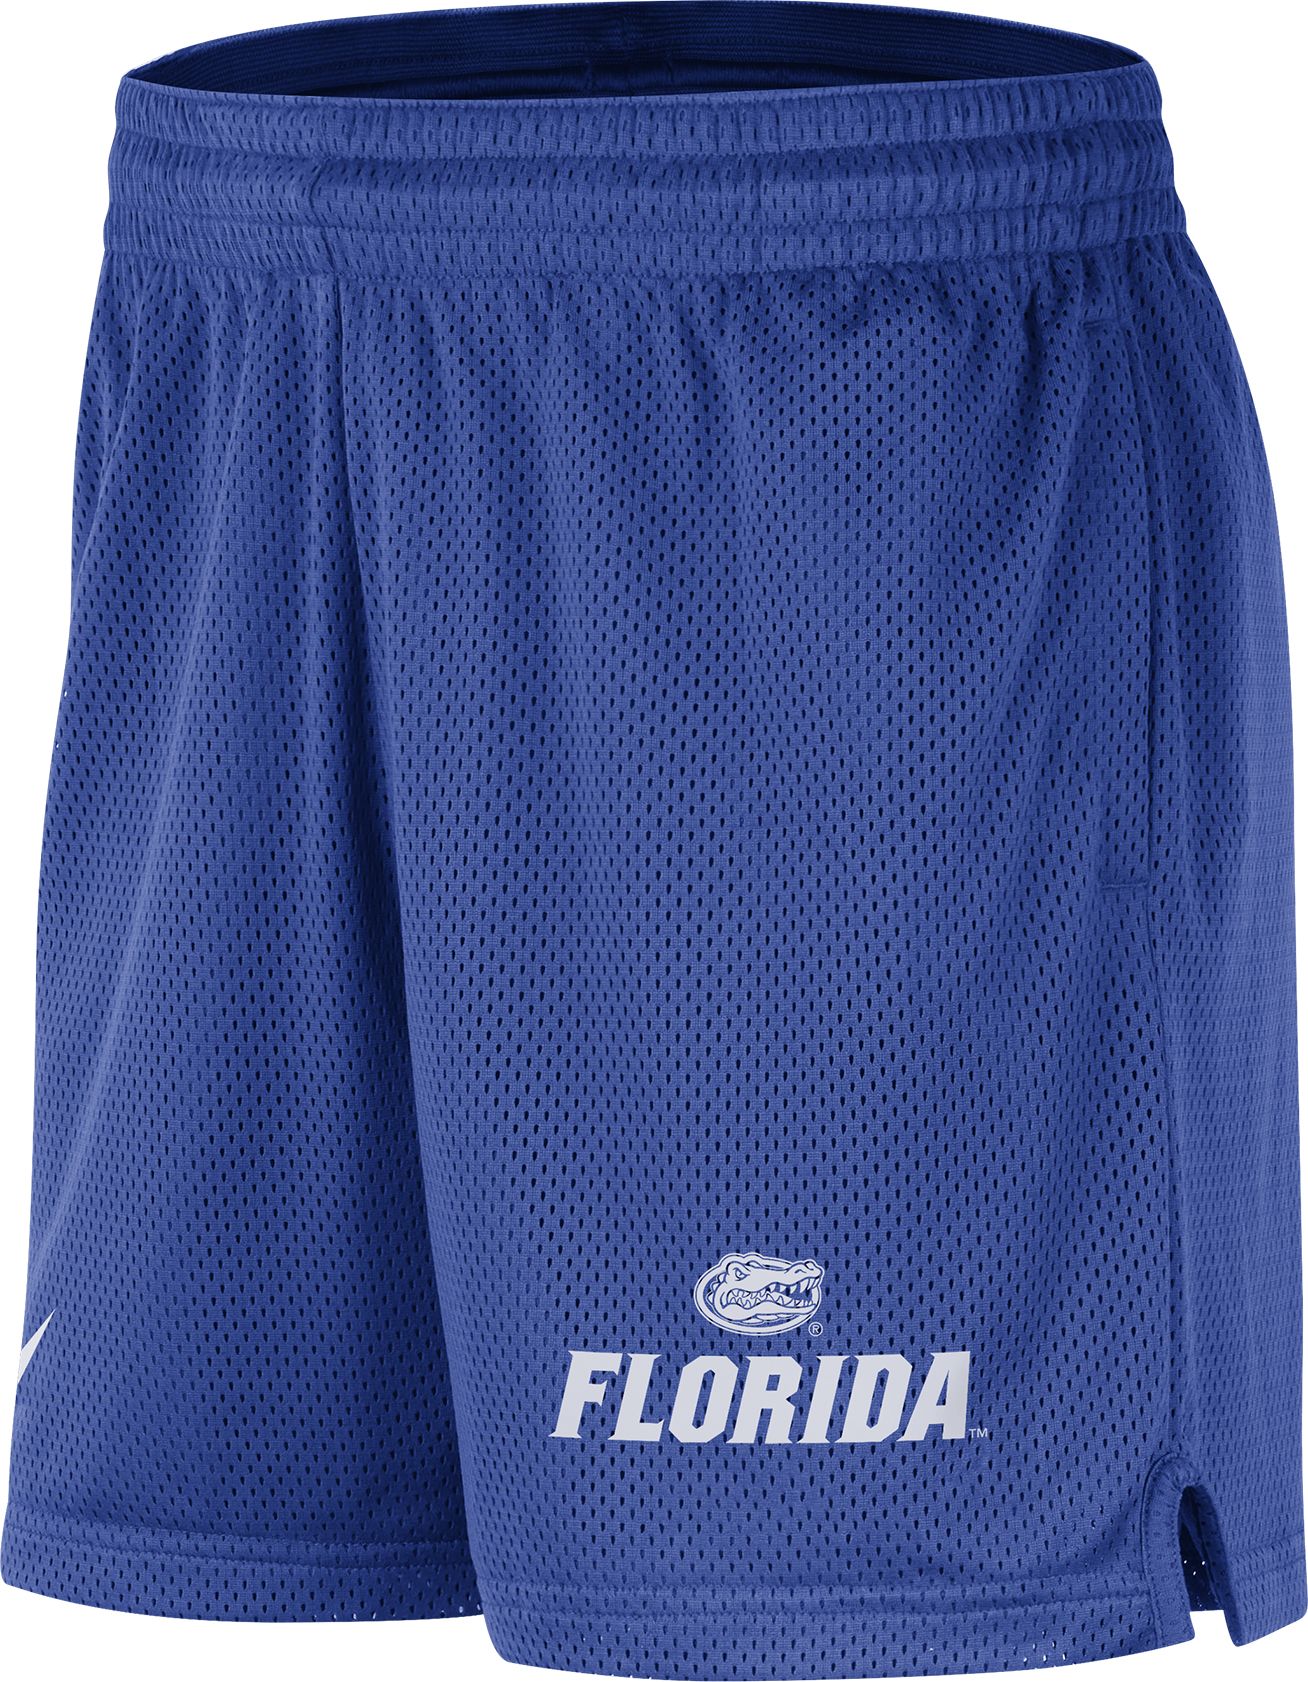 Nike Men's Florida Gators Blue Dri-FIT Knit Mesh Shorts